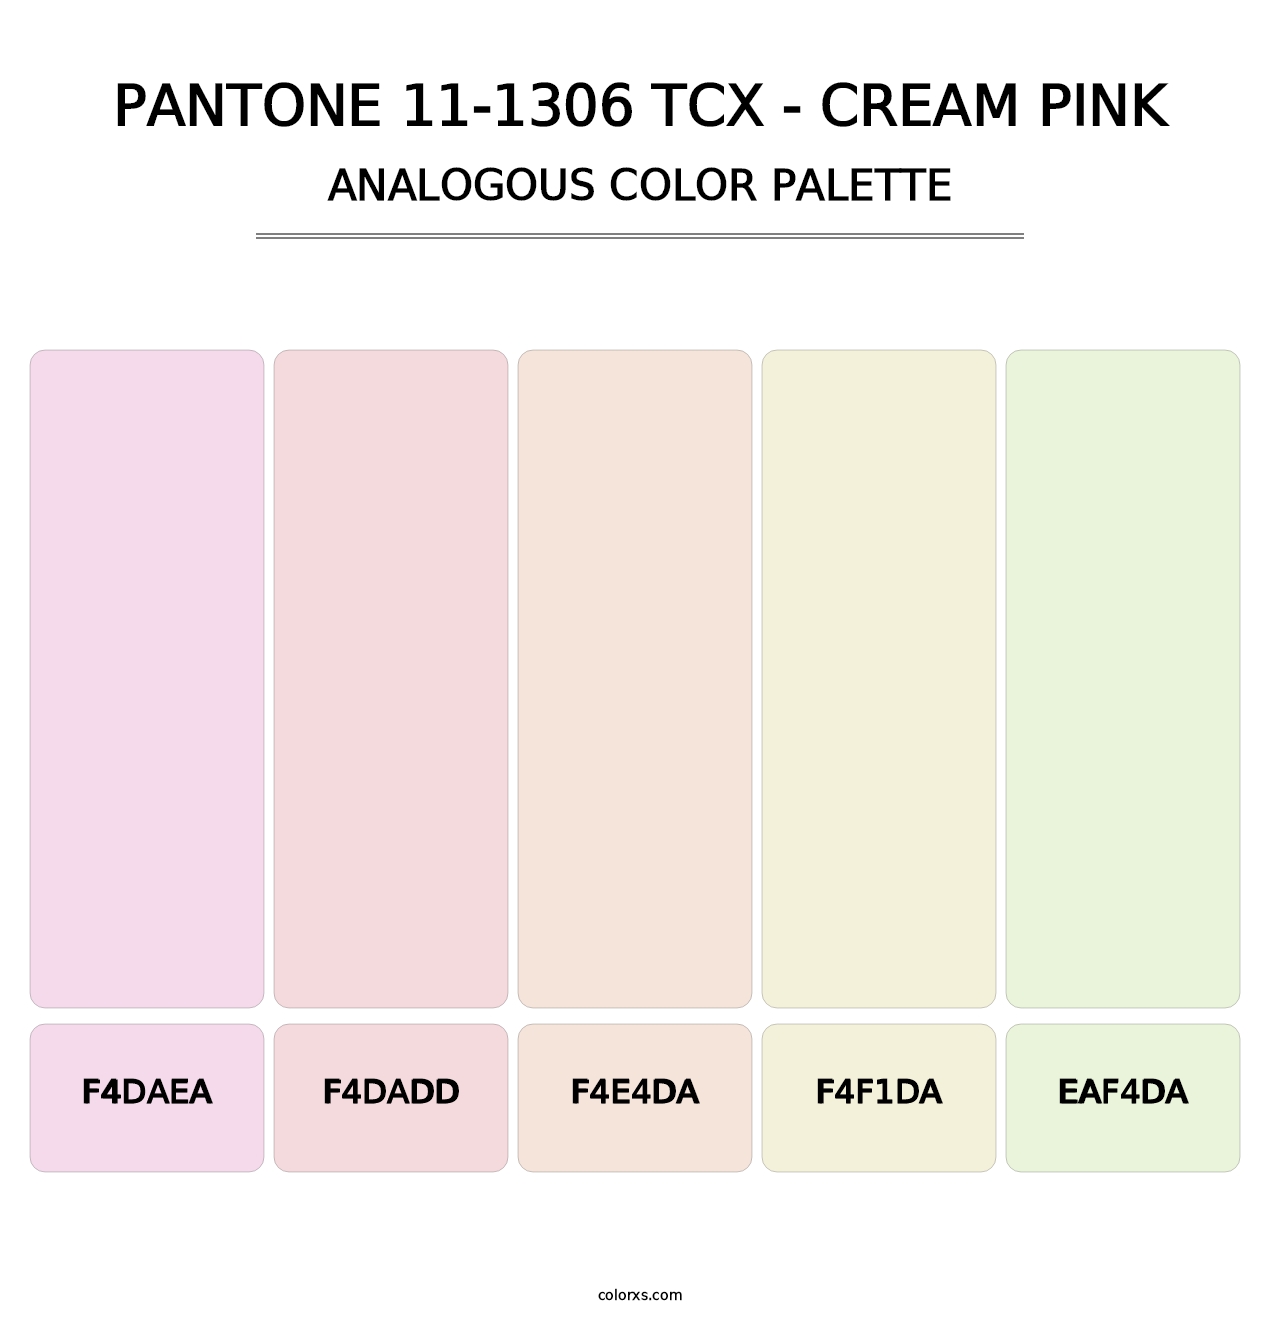 PANTONE 11-1306 TCX - Cream Pink - Analogous Color Palette